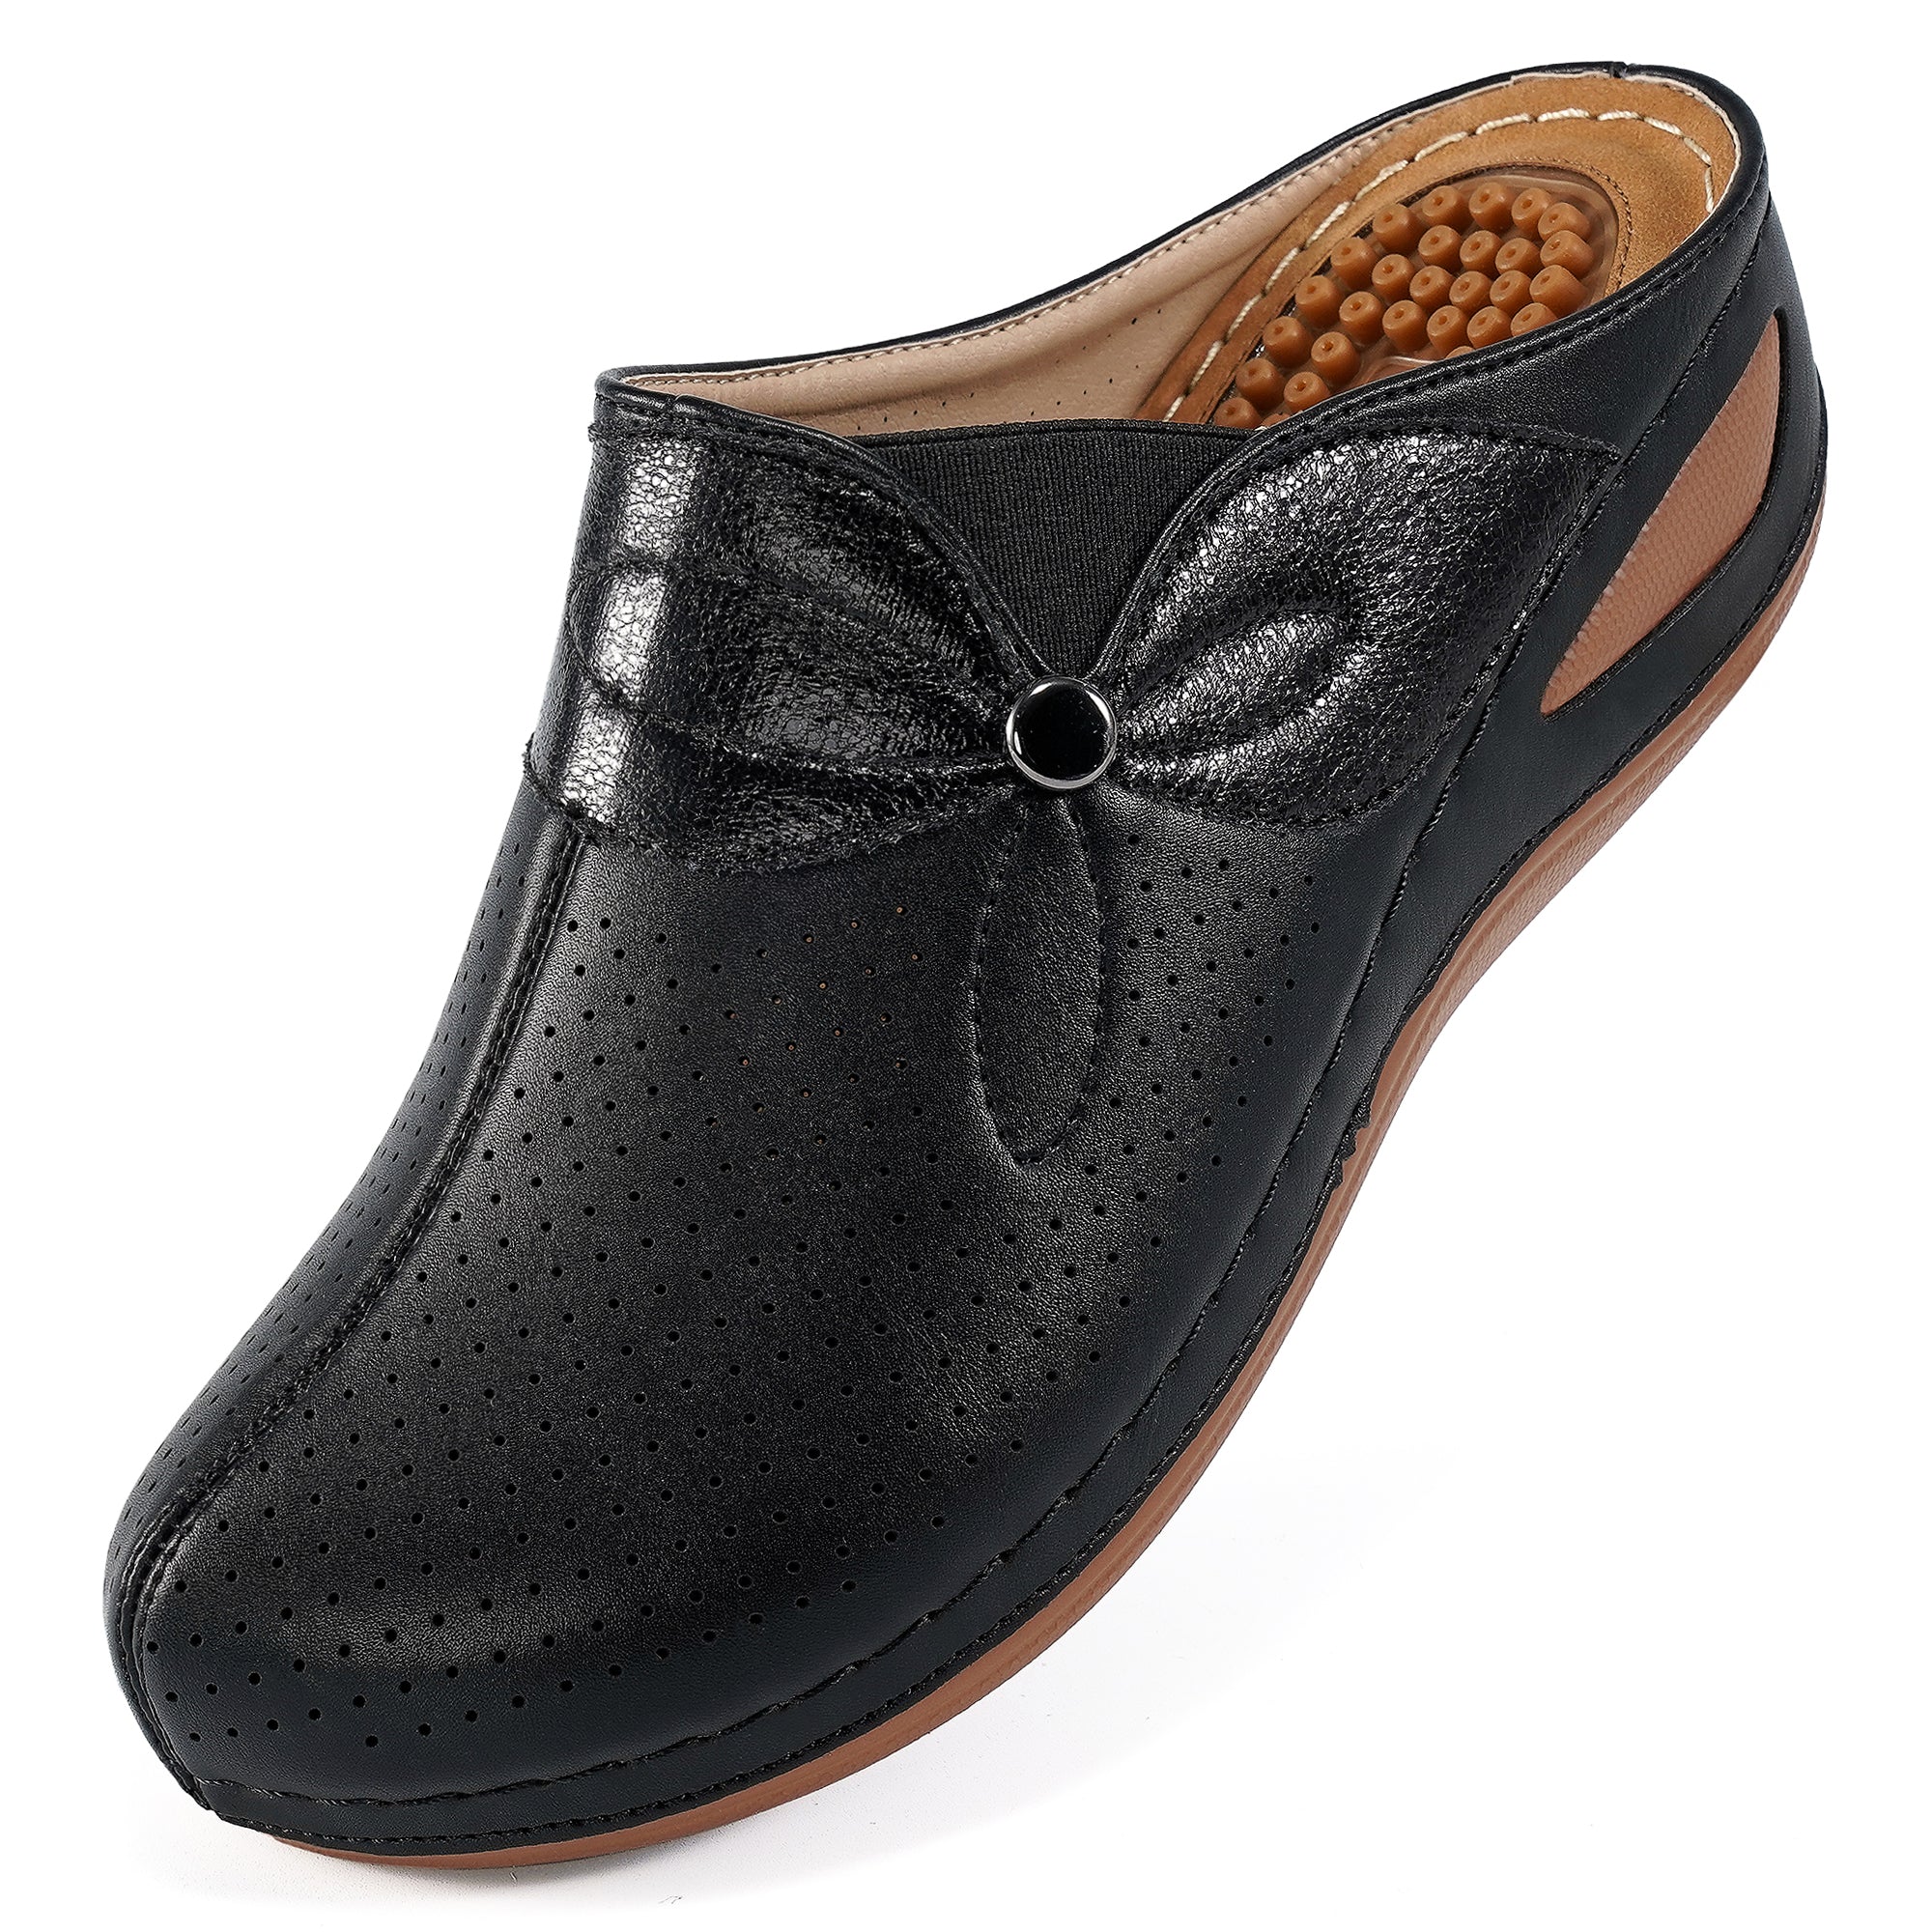 Buy Women Sandals Online | Birkenstock Ladies Branded Sandals– BIRKENSTOCK